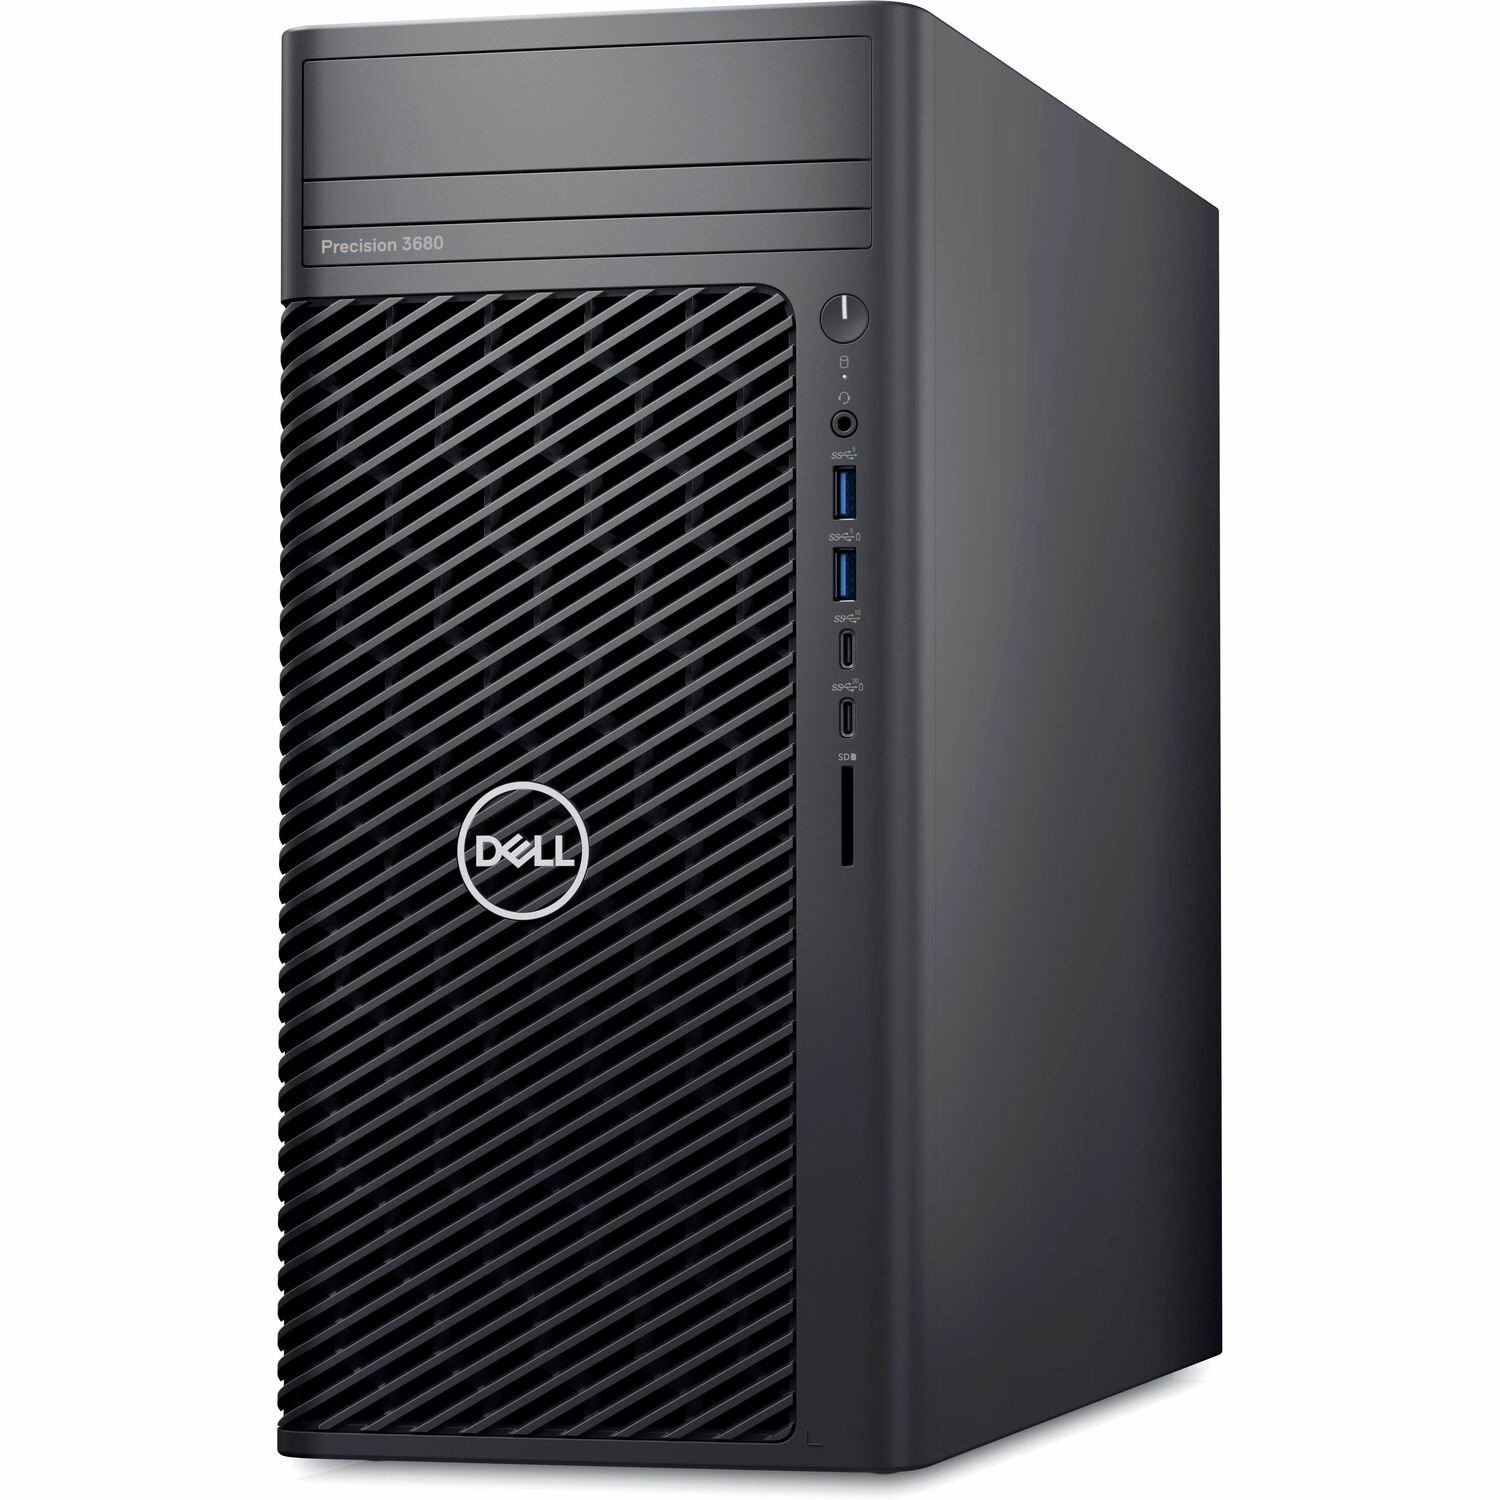 Dell Precision 3000 3680 Workstation - Intel Core i7 14th Gen i7-14700K - 32 GB - 1 TB SSD - Tower - Black